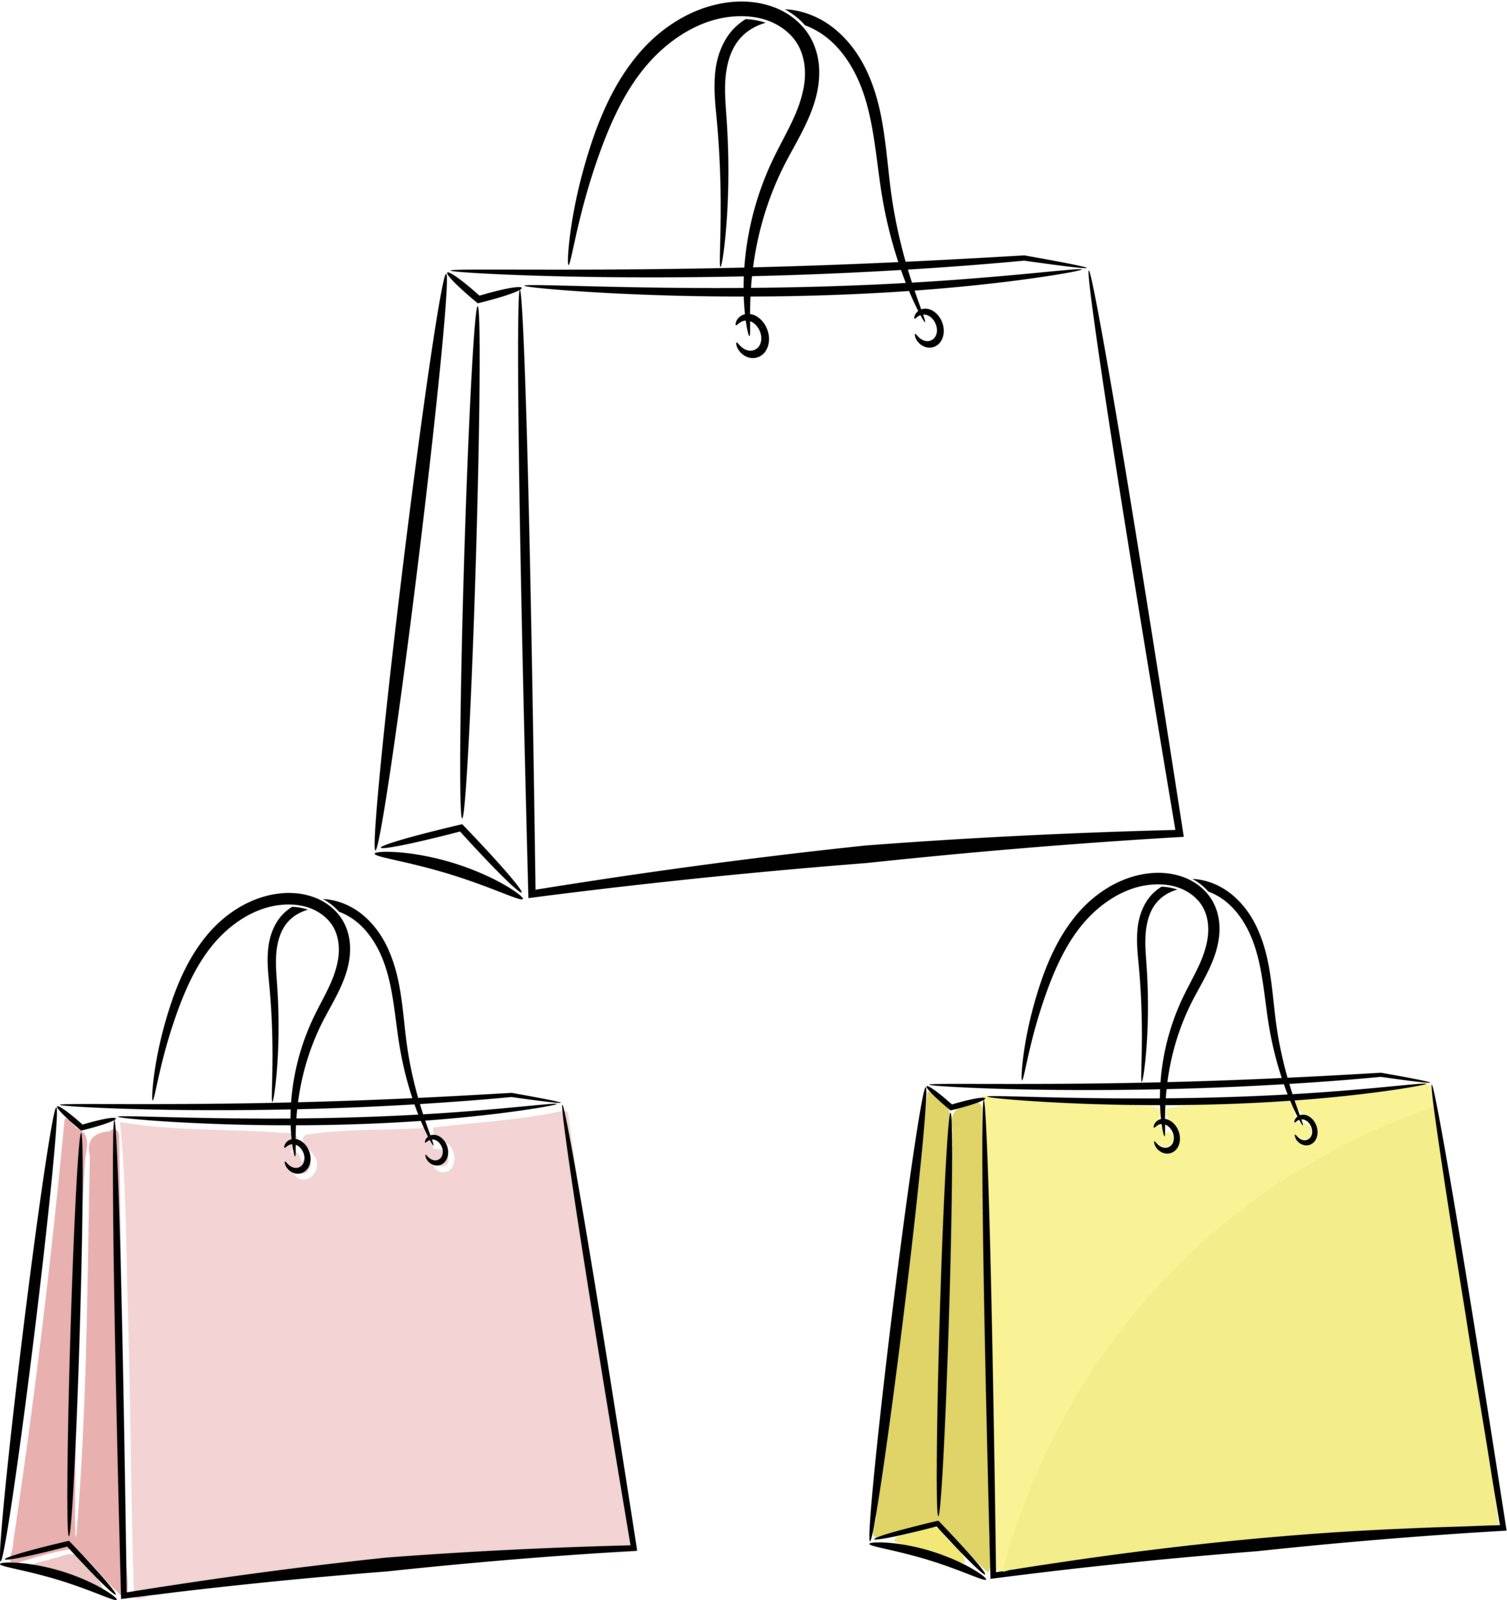 Women's handbag for shopping. eps10 by Larser